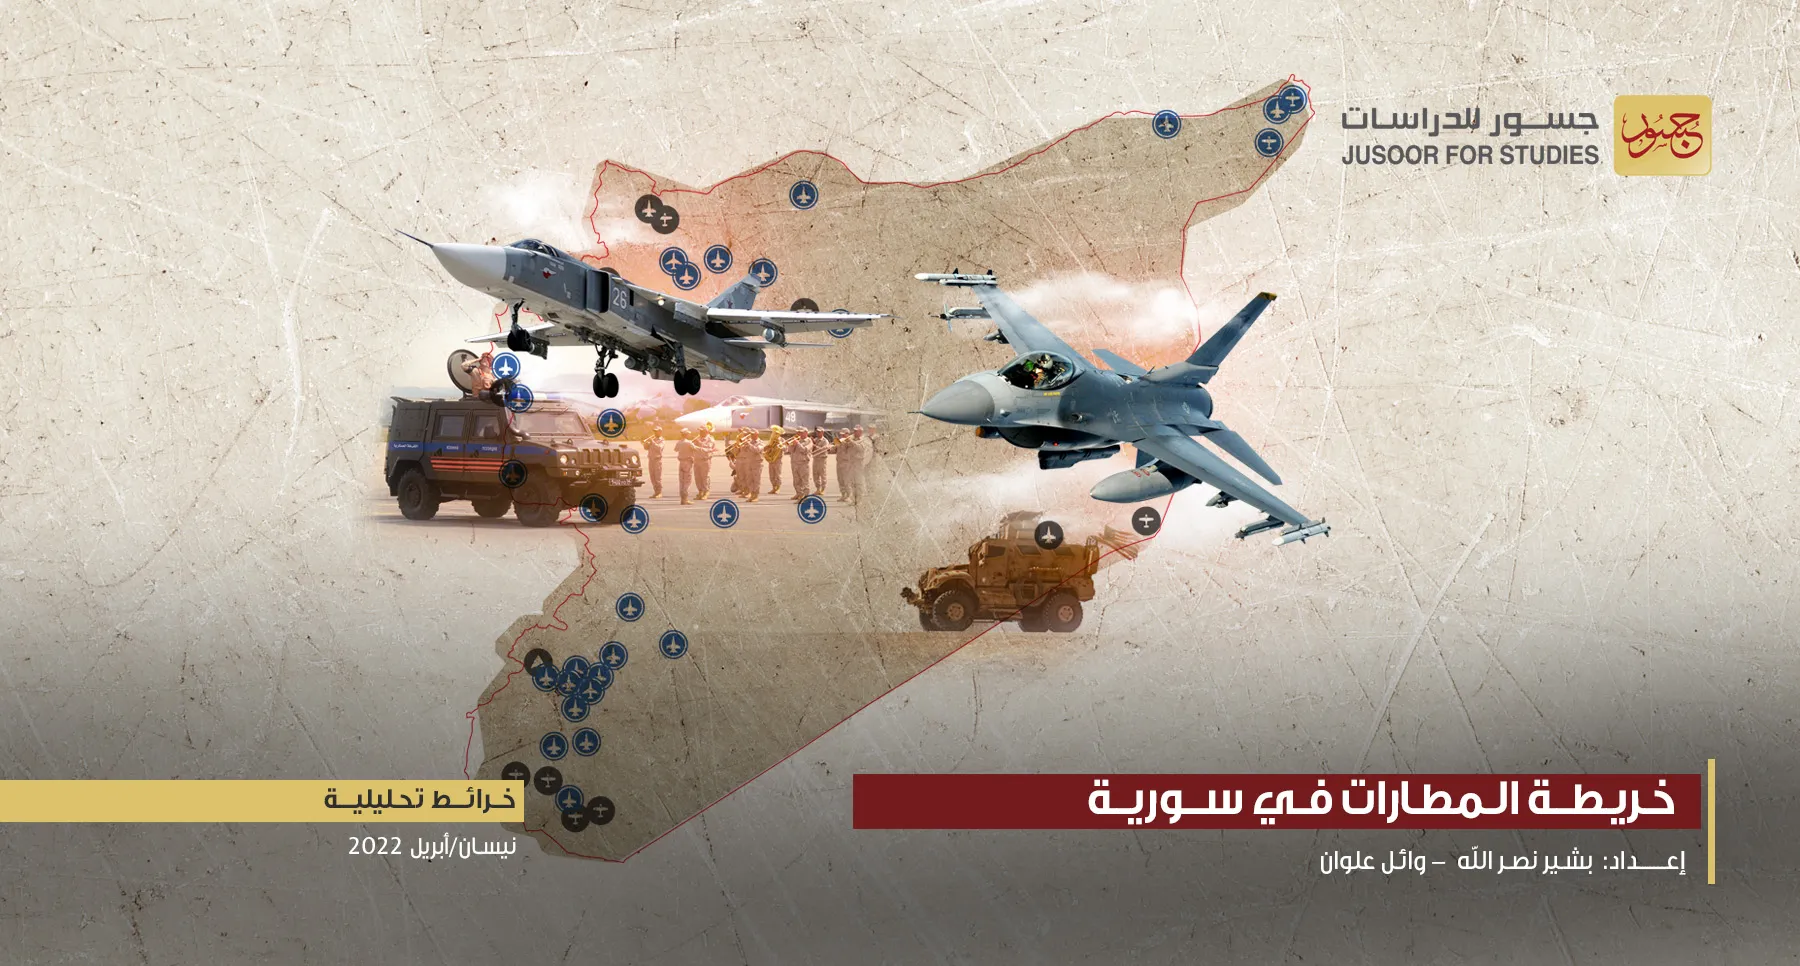 "جسور للدراسات" ينشر خريطة تحليلية تظهر توزع 55 مطاراً بعموم مناطق سوريا